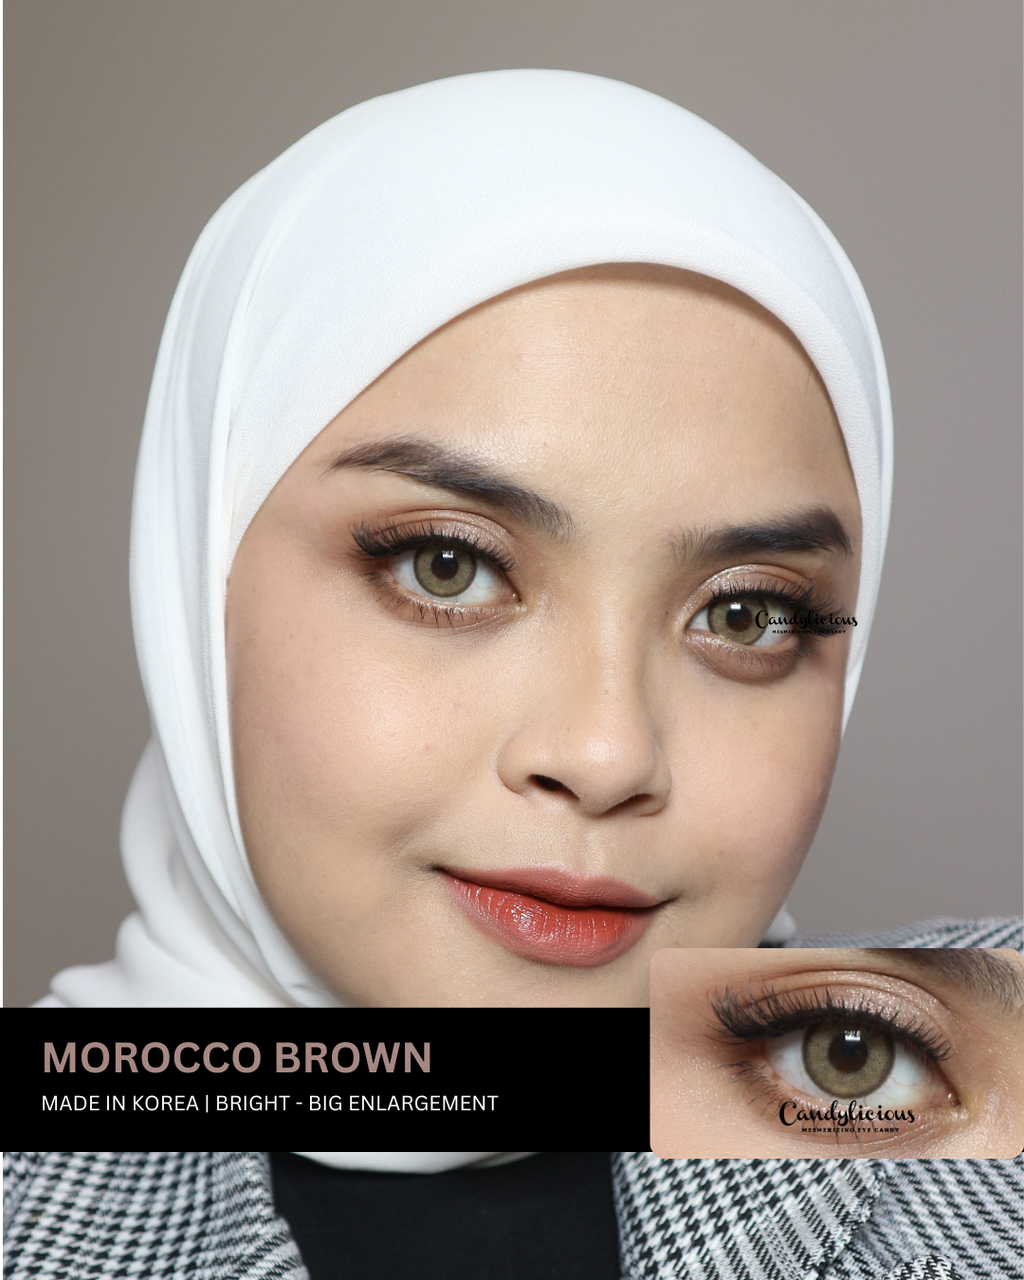 Morocco Brown